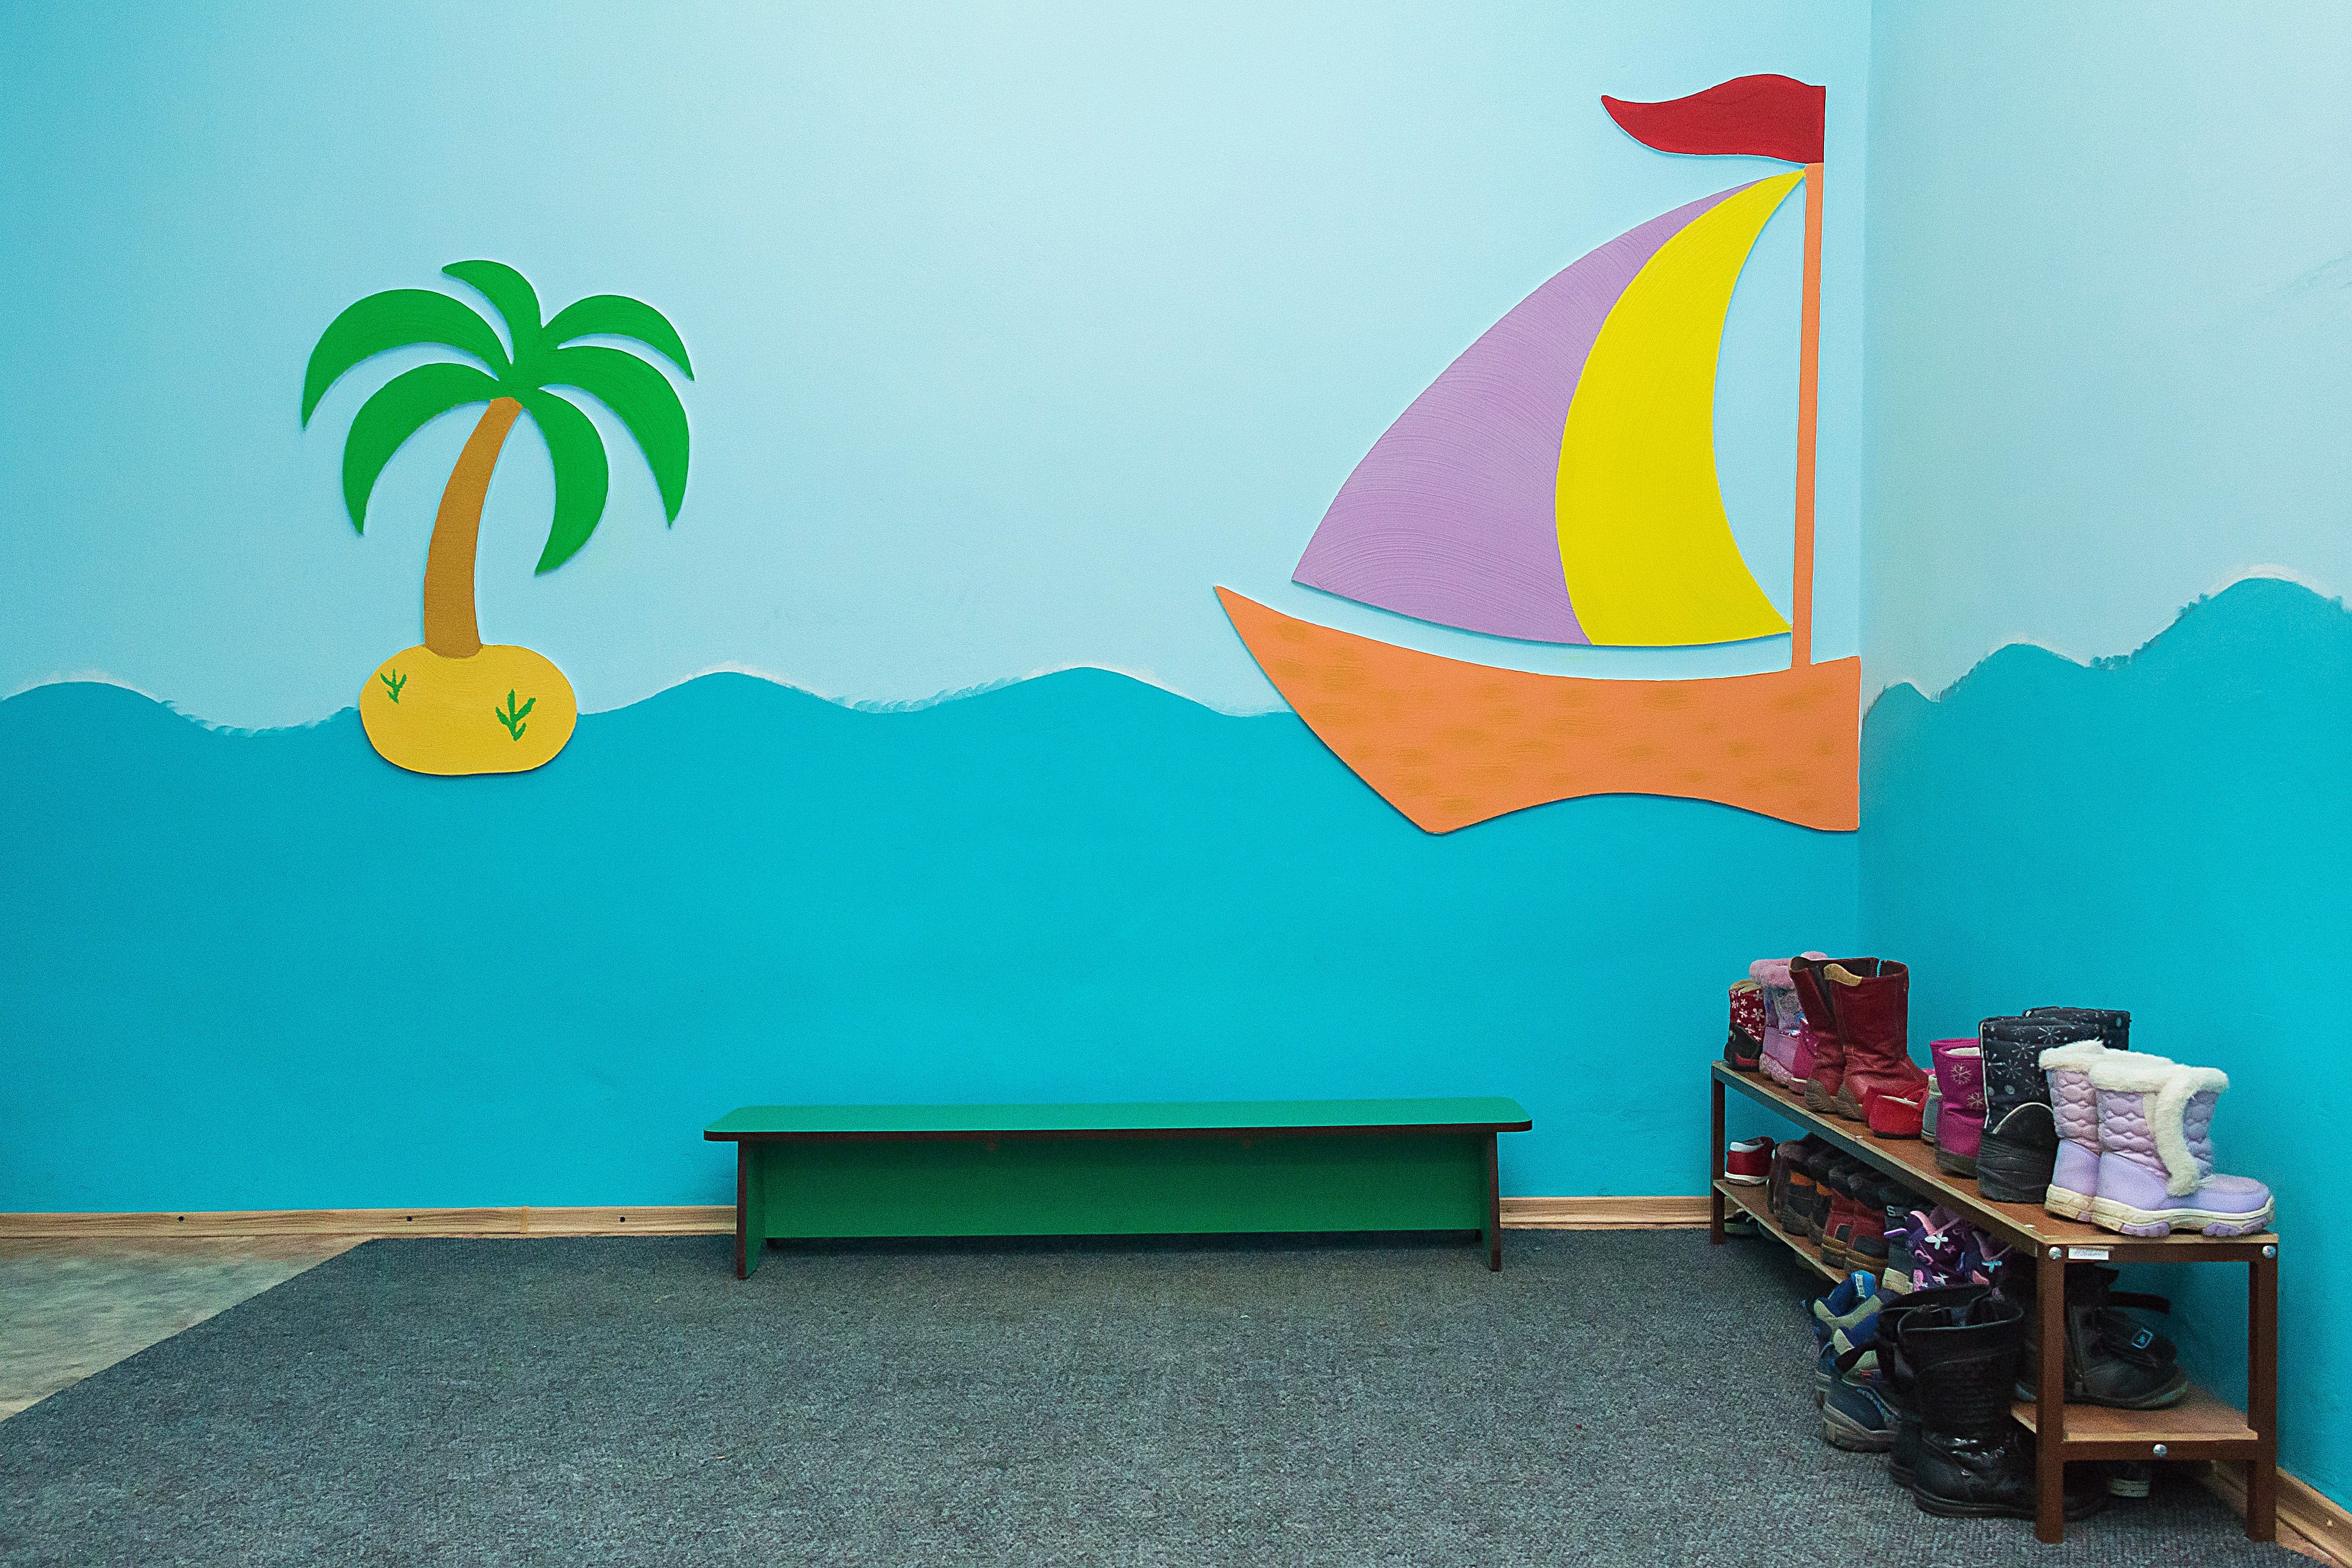 Покраска стен в детском саду